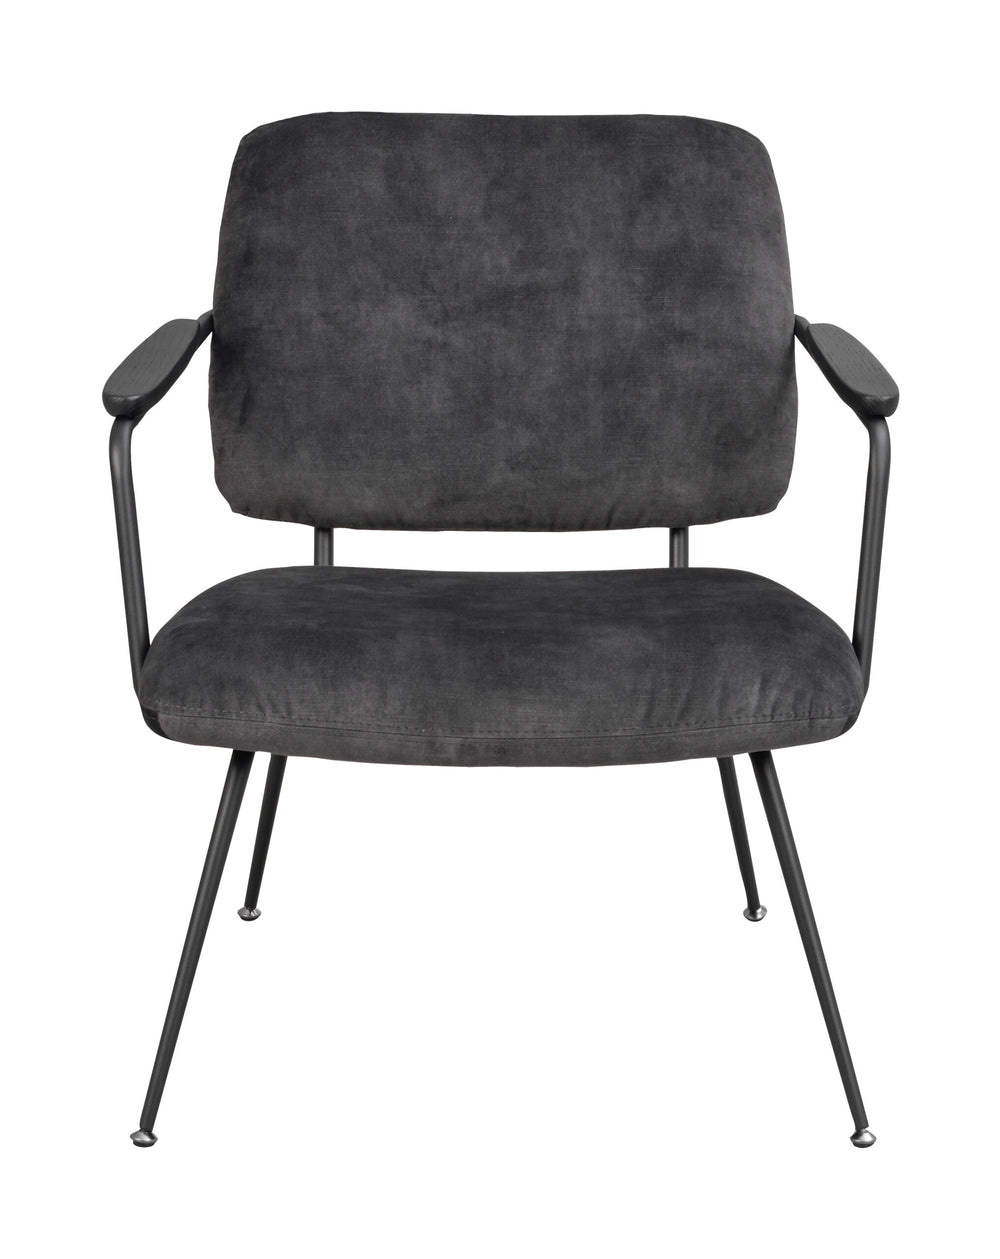 120112_a, Prescott lounge chair grey_black